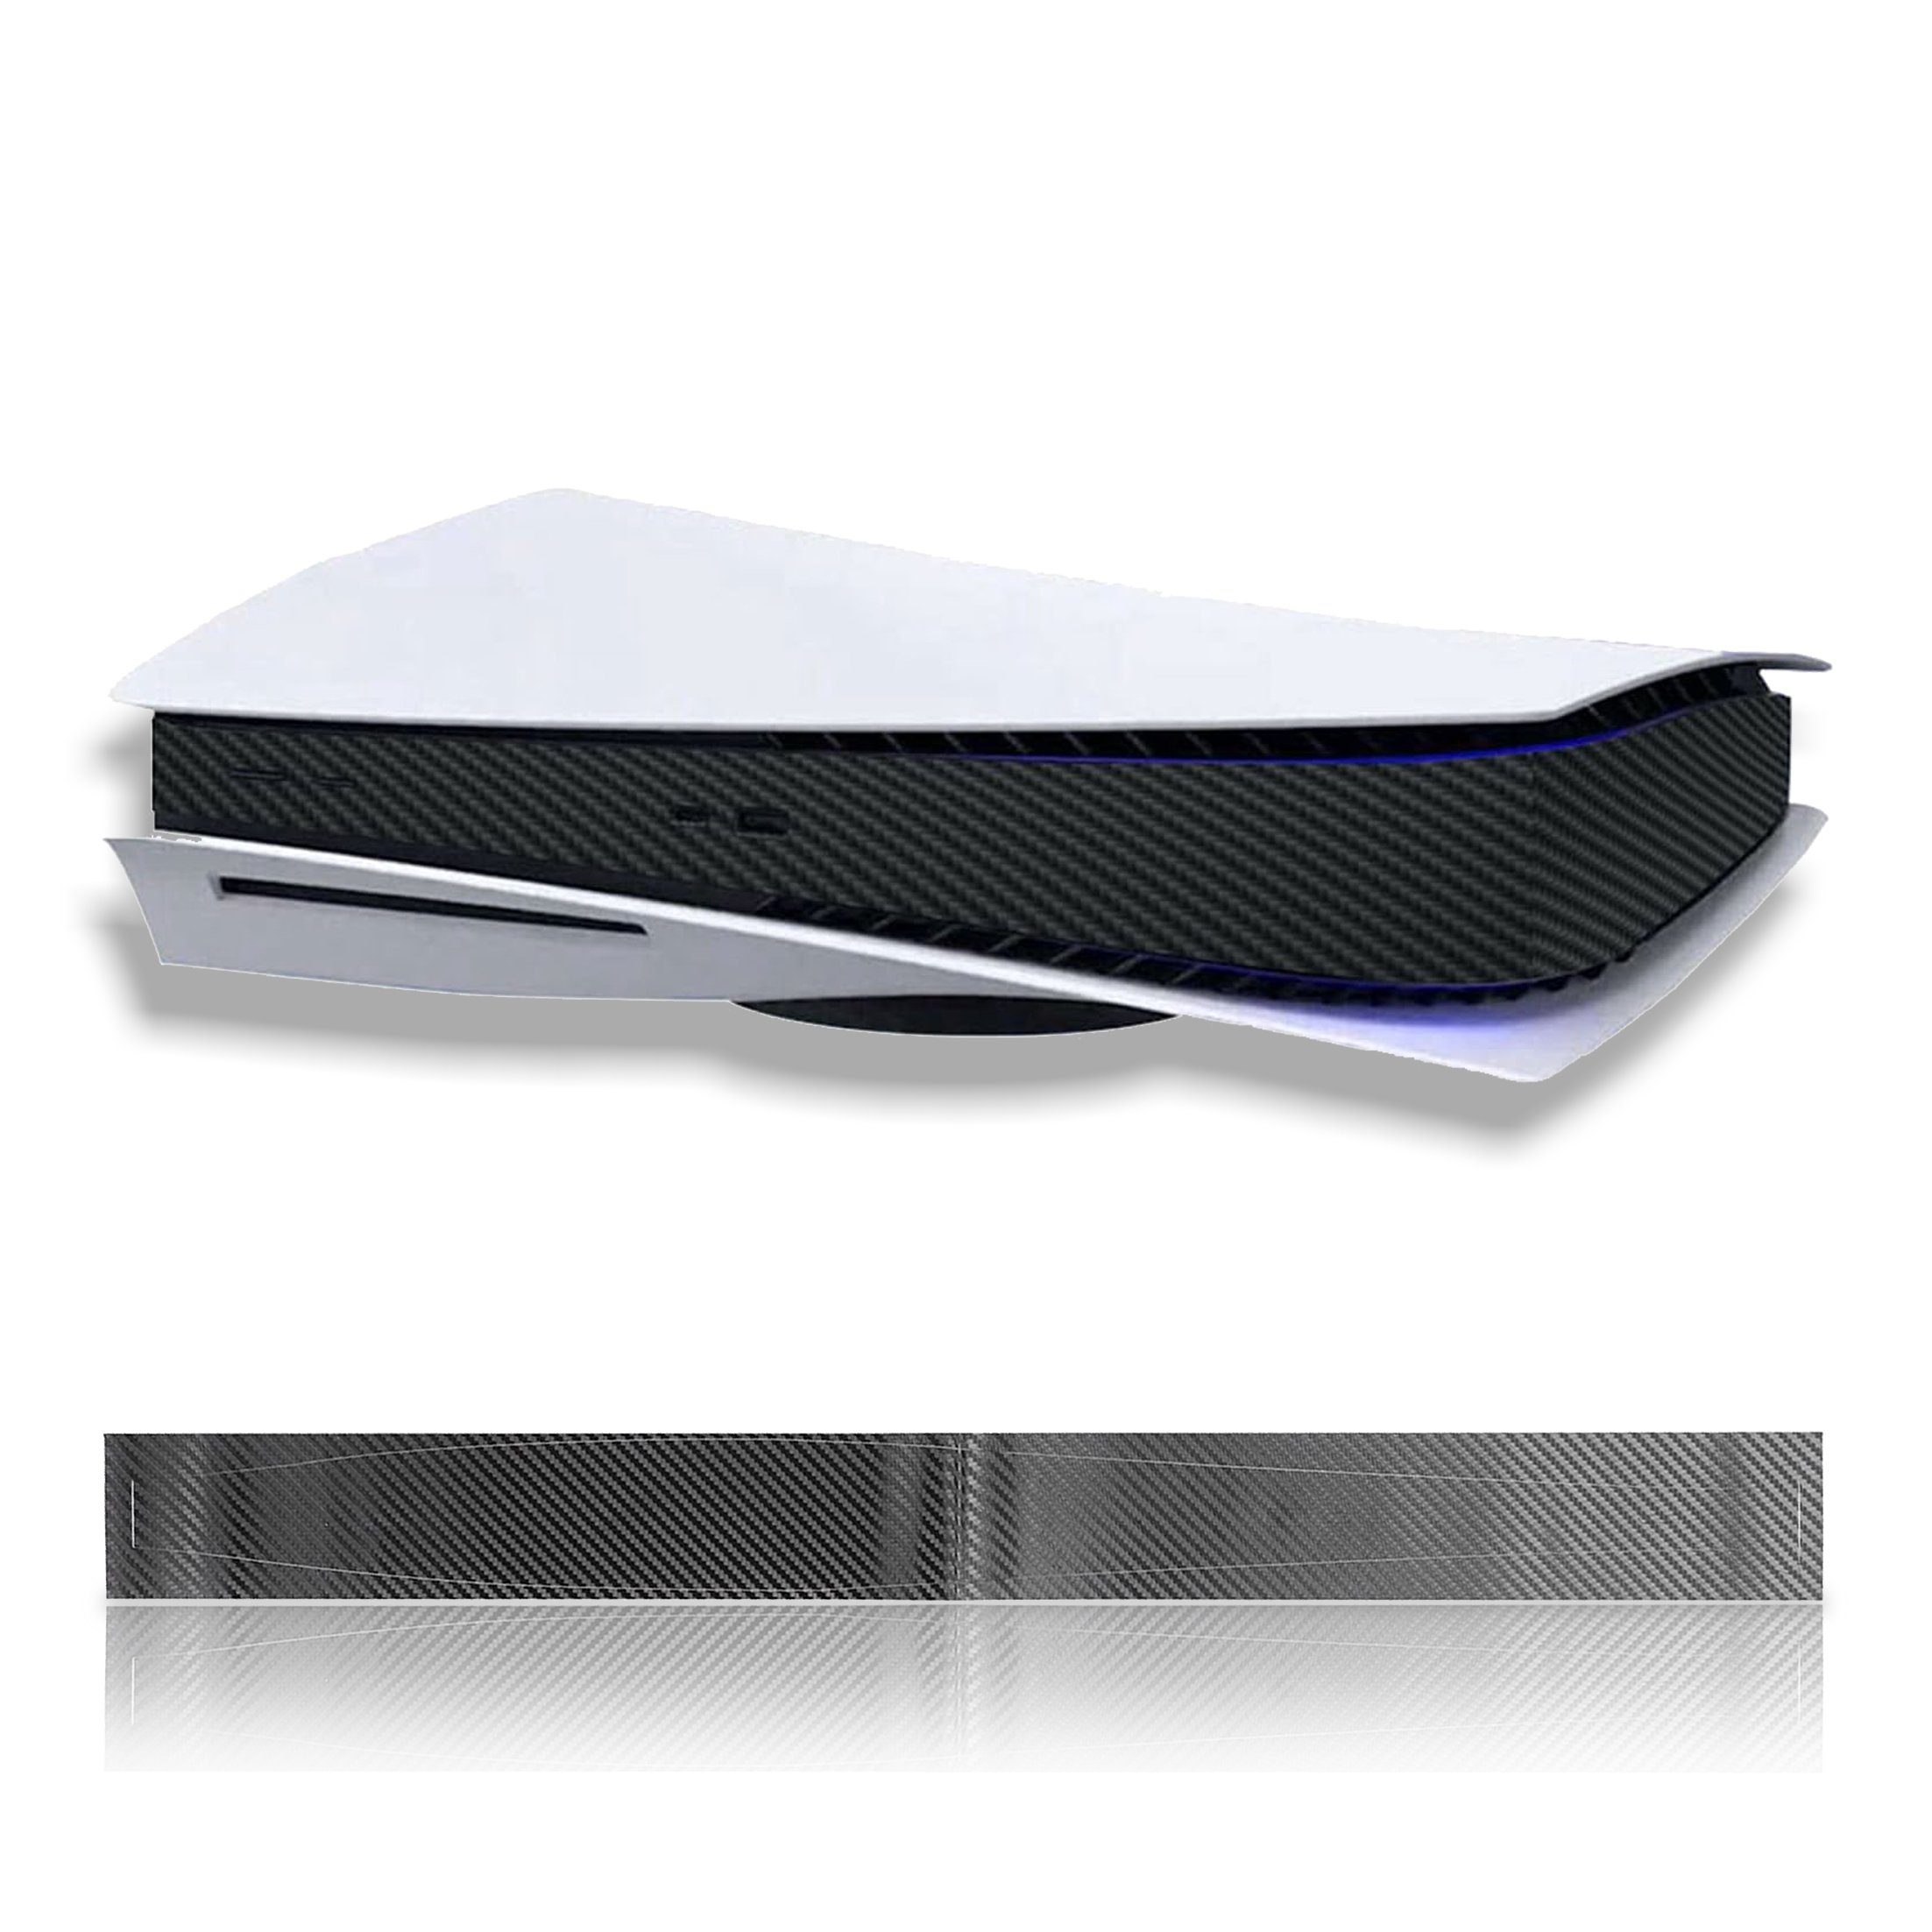 Tadow PS5-Konsolen-Mittelaufkleber, CD-ROM-Version, Schutzfolie,3 Stile PlayStation 5-Controller (Spielkonsolenfolie für PS5-Schutzstreifen integriert)